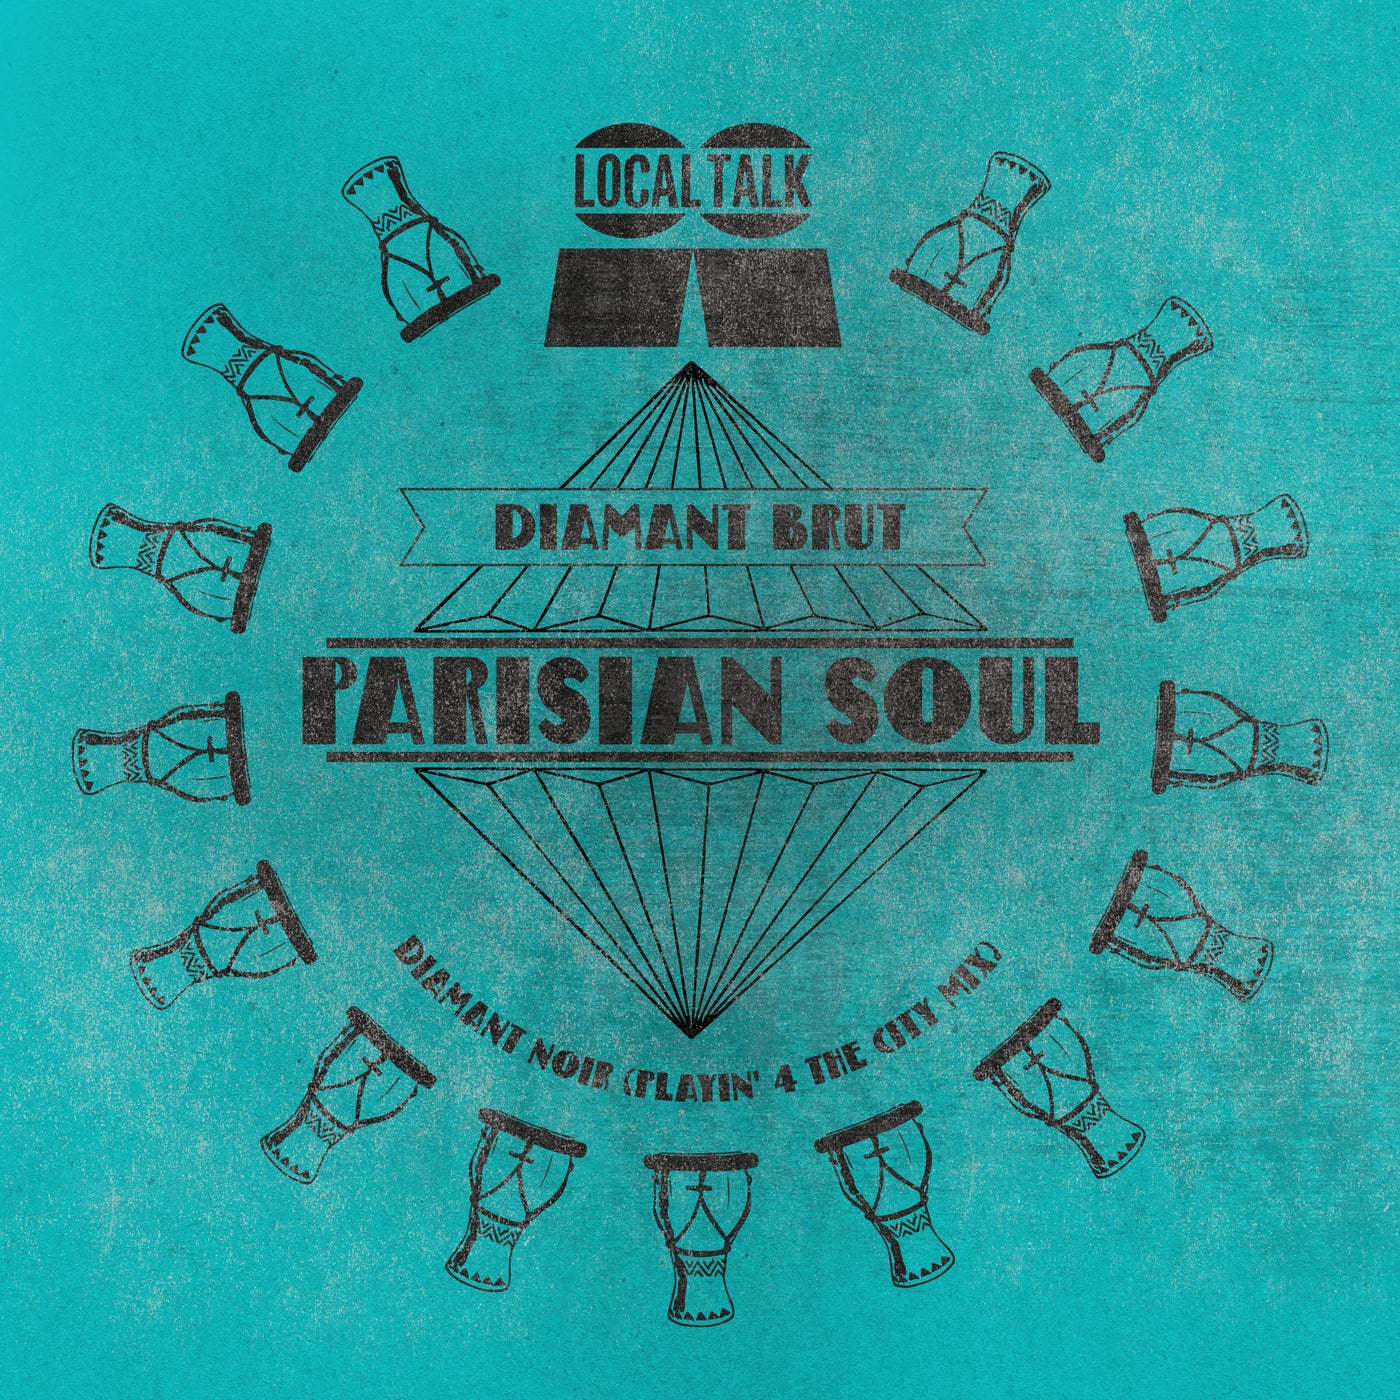 image cover: Parisian Soul - Diamant Noir (Playin' 4 The City Mix) / LT115B